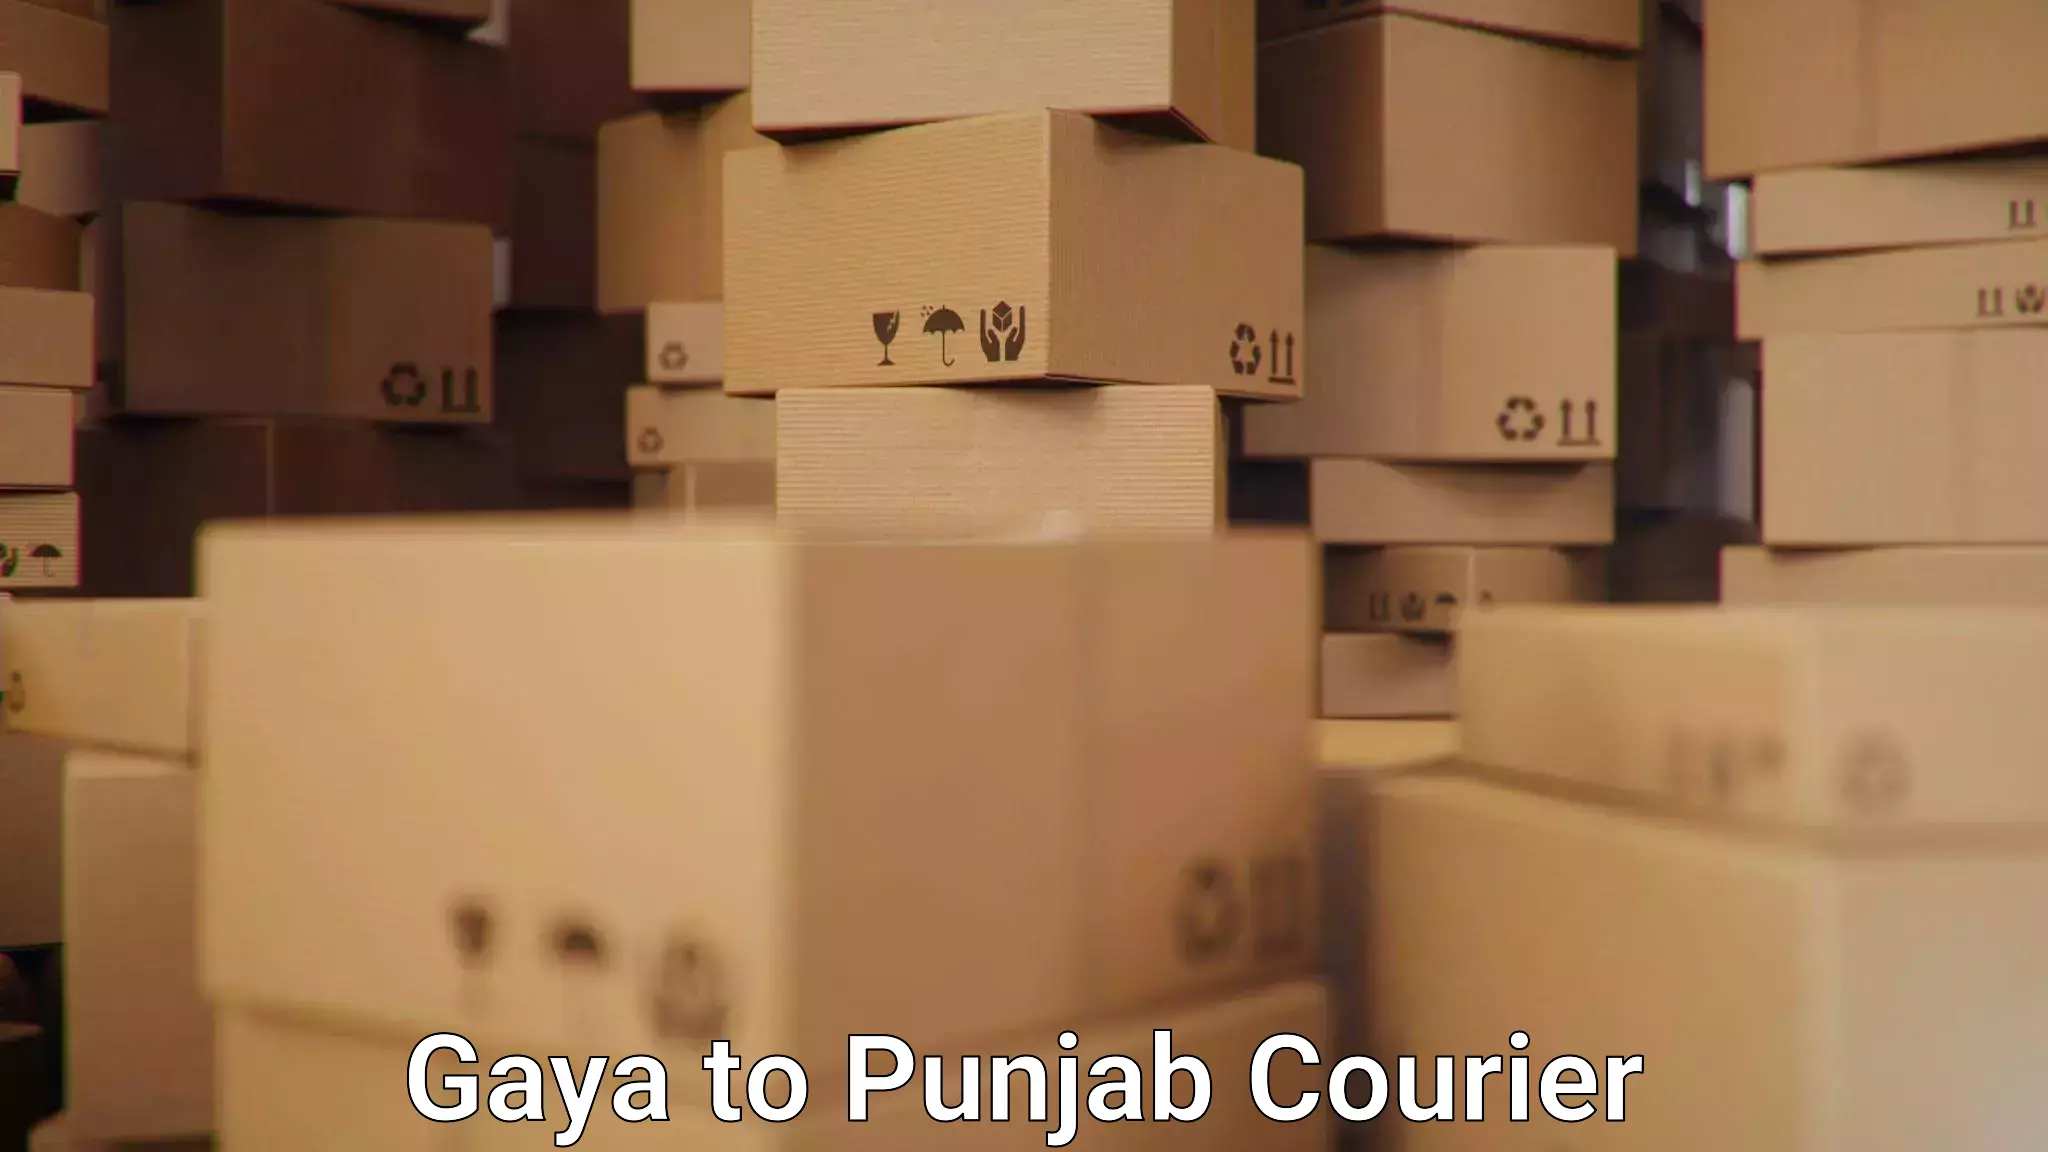 Nationwide courier service Gaya to Gurdaspur